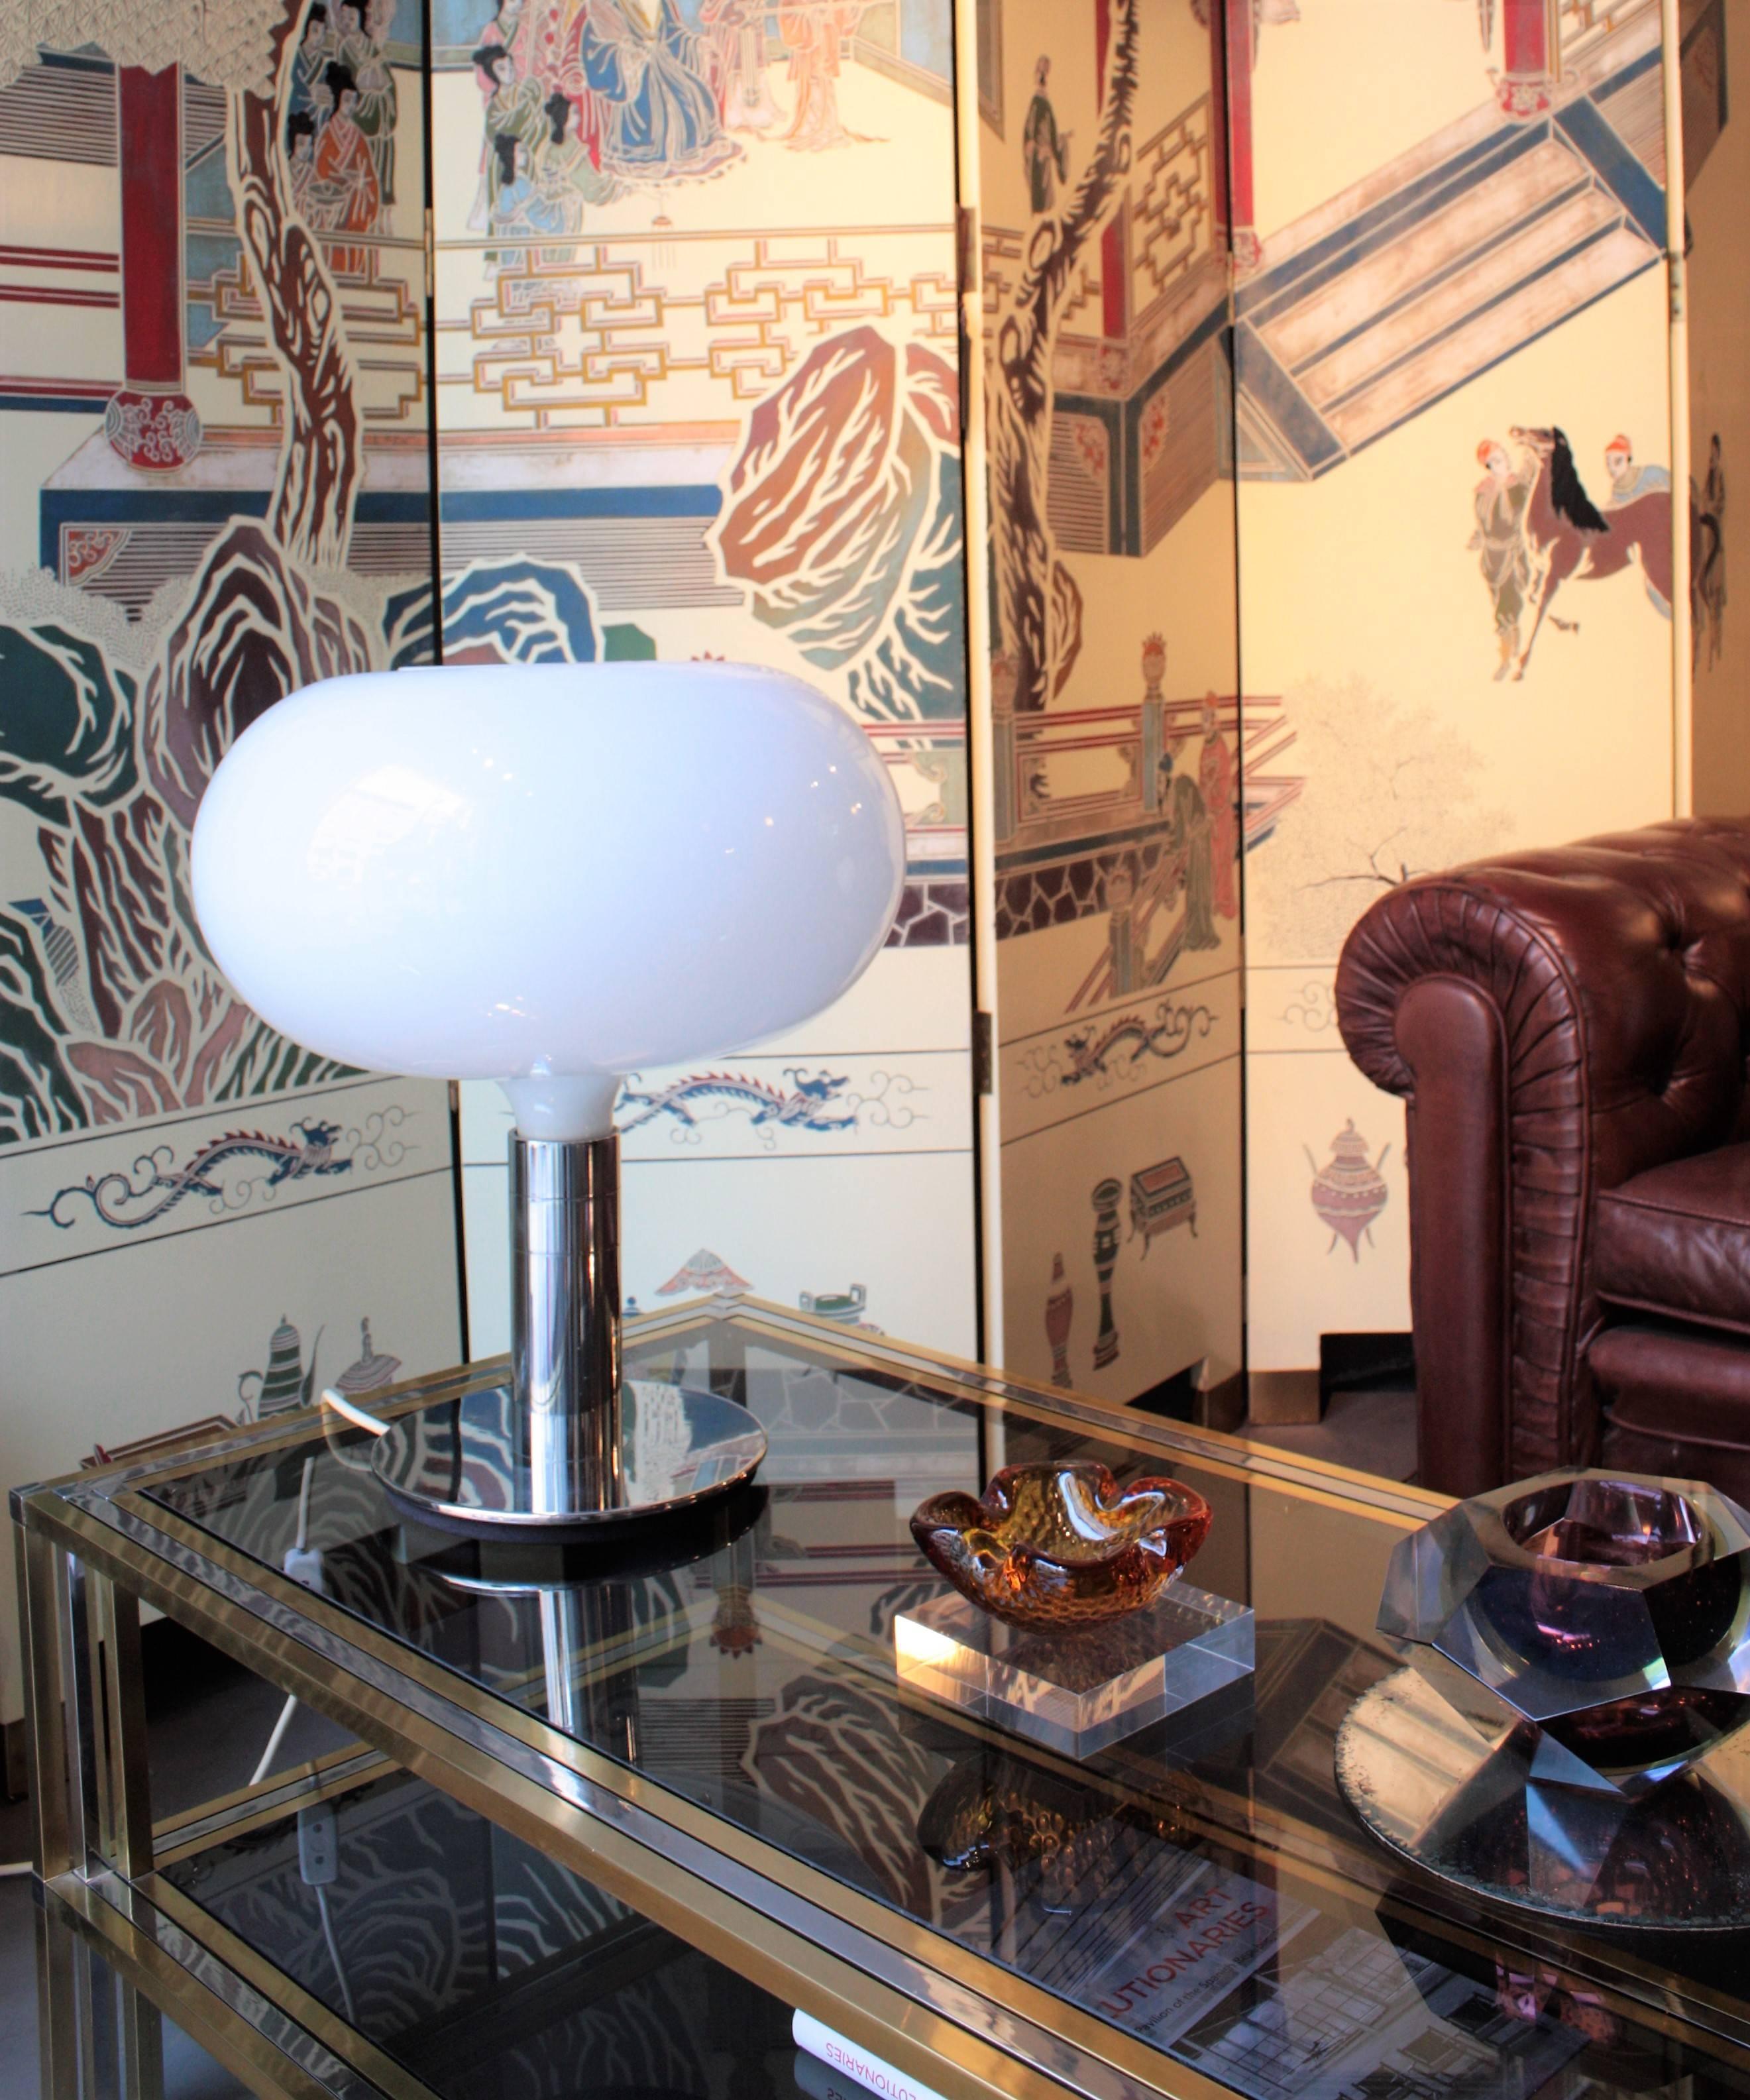 Lampe de table de la série AM/AS, conçue par Franco Albini et Franca Helg en collaboration avec Antonio Piva, fabriquée par Sirrah en 1969. 
Abat-jour en verre opalin, base chromée. Modèle AM1/N. Italie, années 1970.
Mesures : 52 cm H x 40 cm